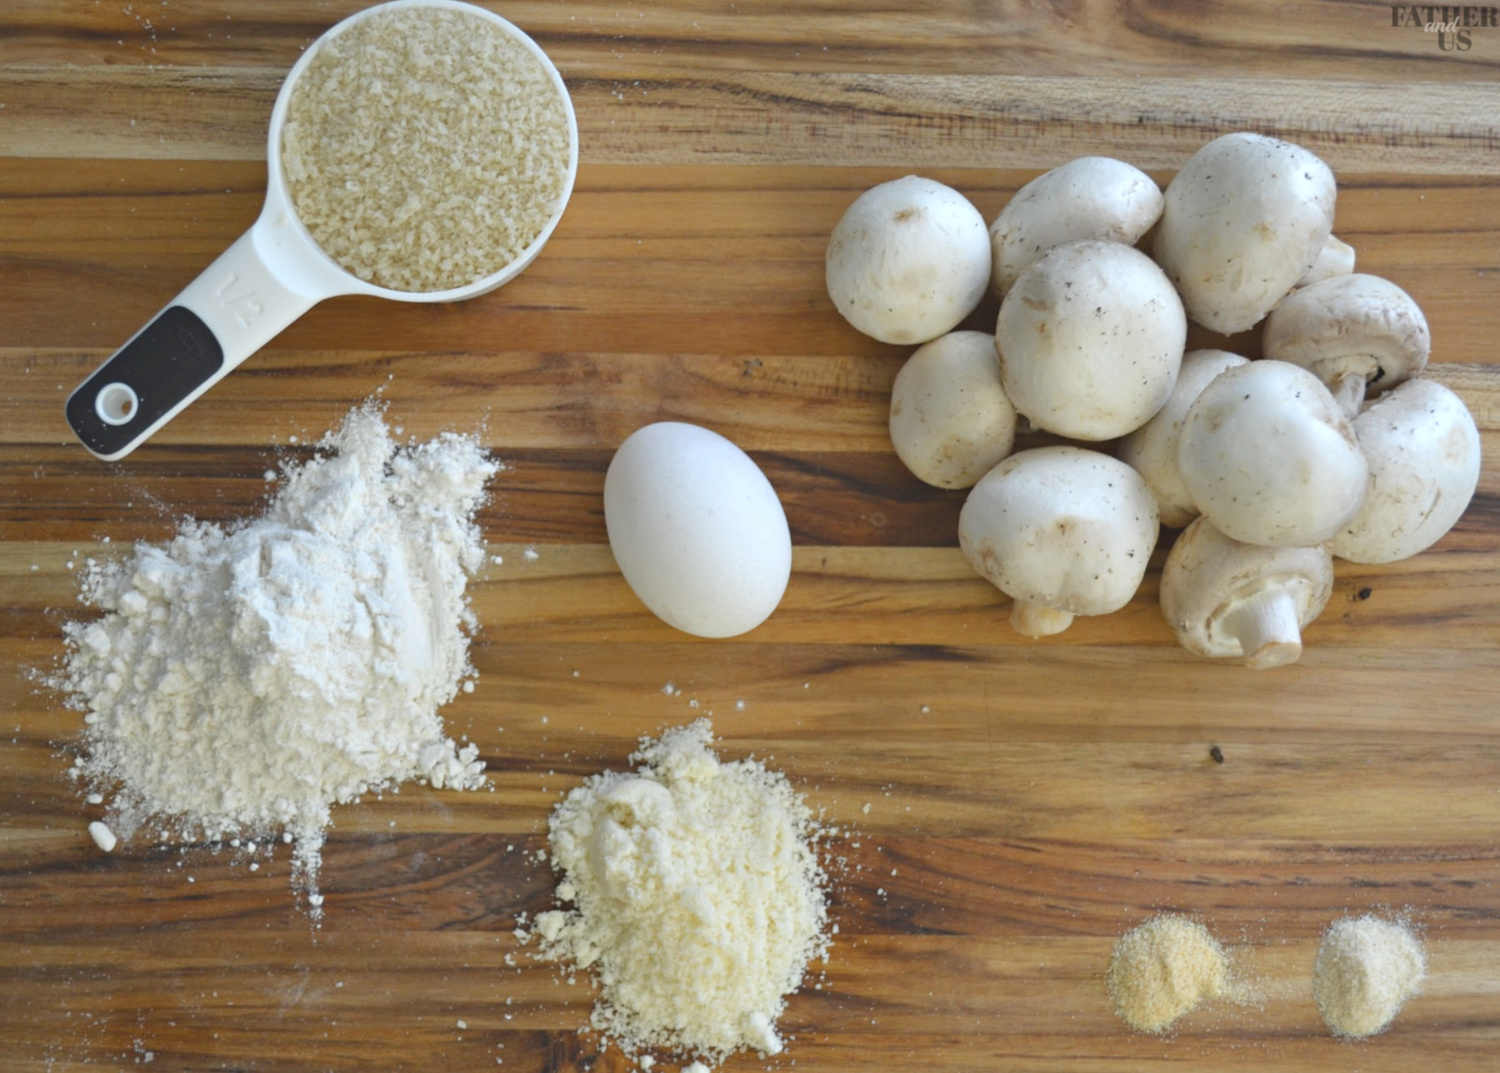 Crispy Air Fryer Mushrooms Ingredients include panko breadcrumbs and parmesan cheese